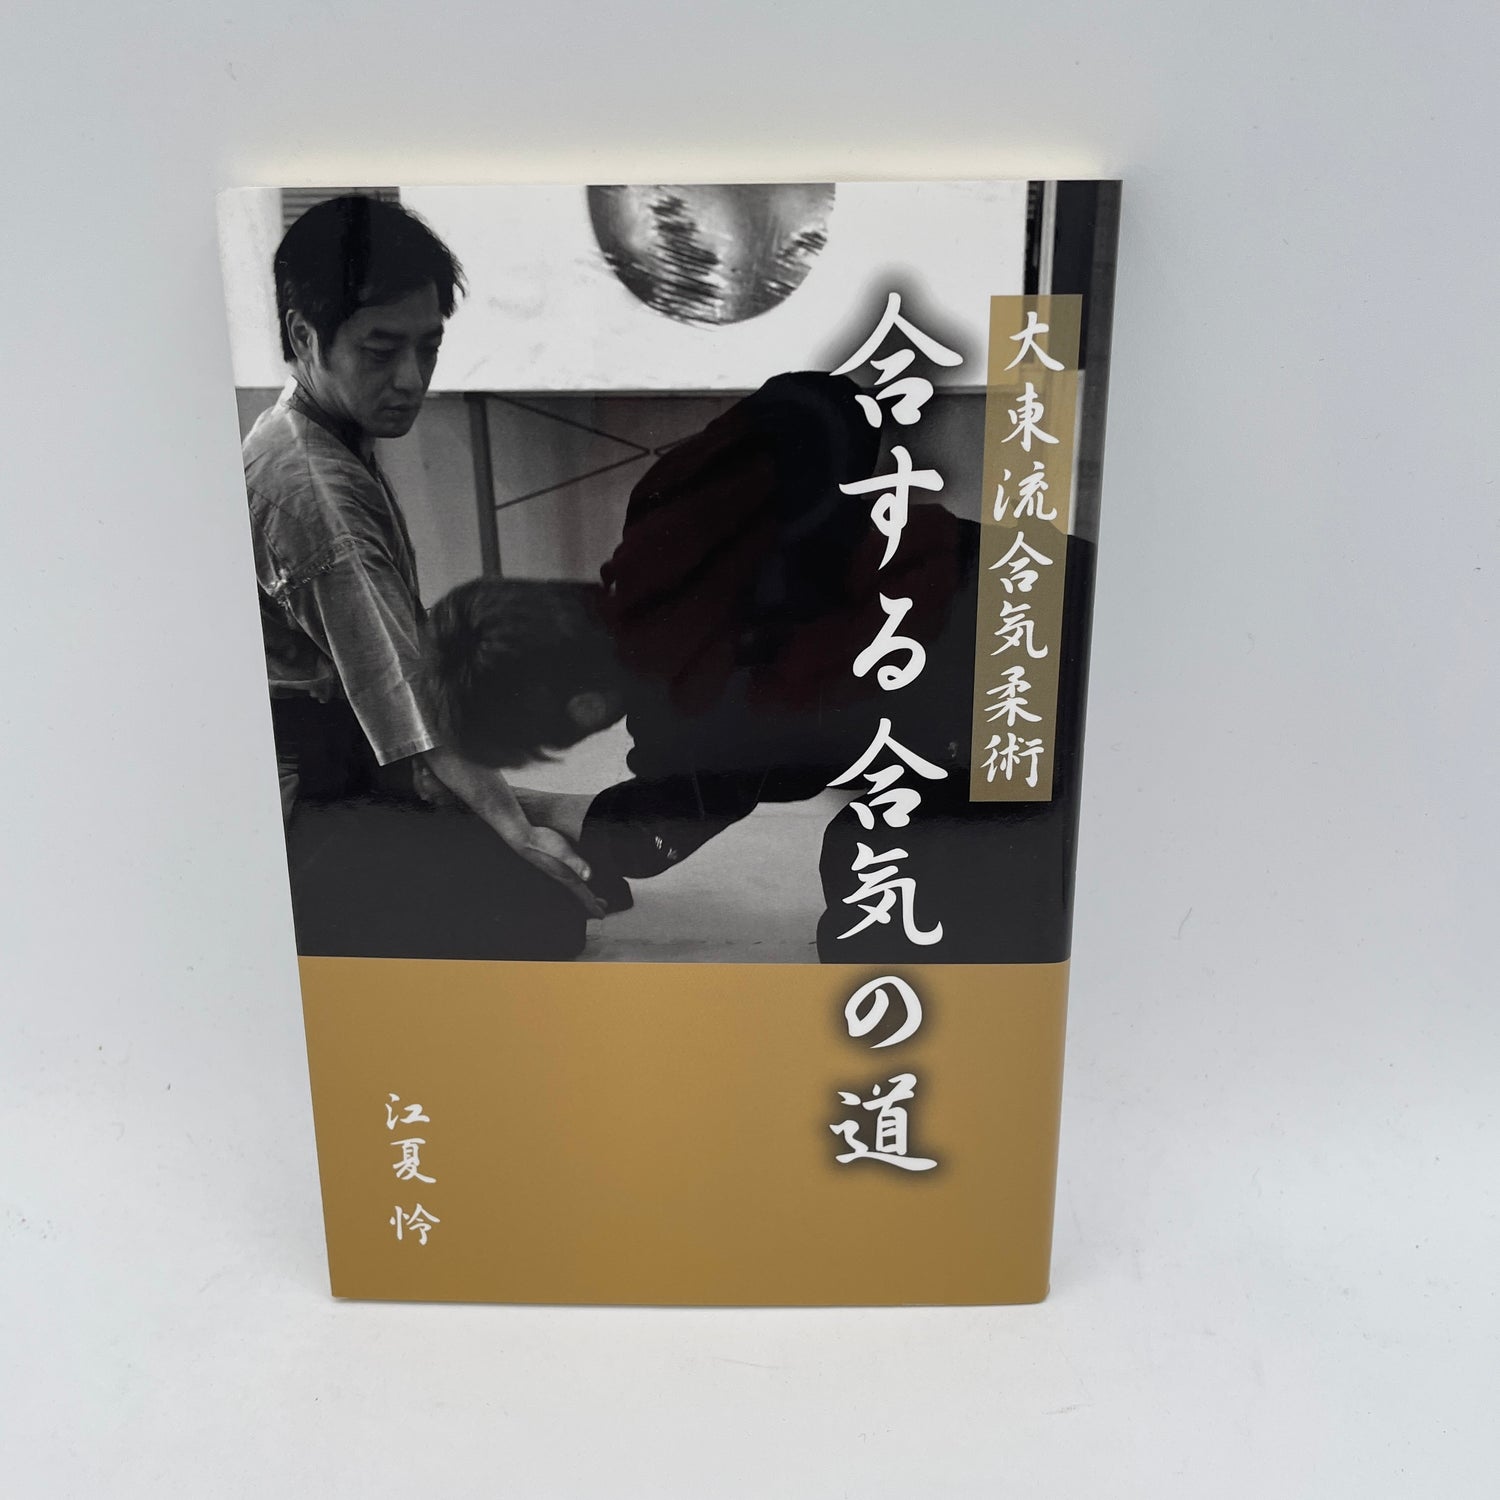 Daito Ryu Aikijujutsu: The Way of Aiki Book by Rei Enatsu